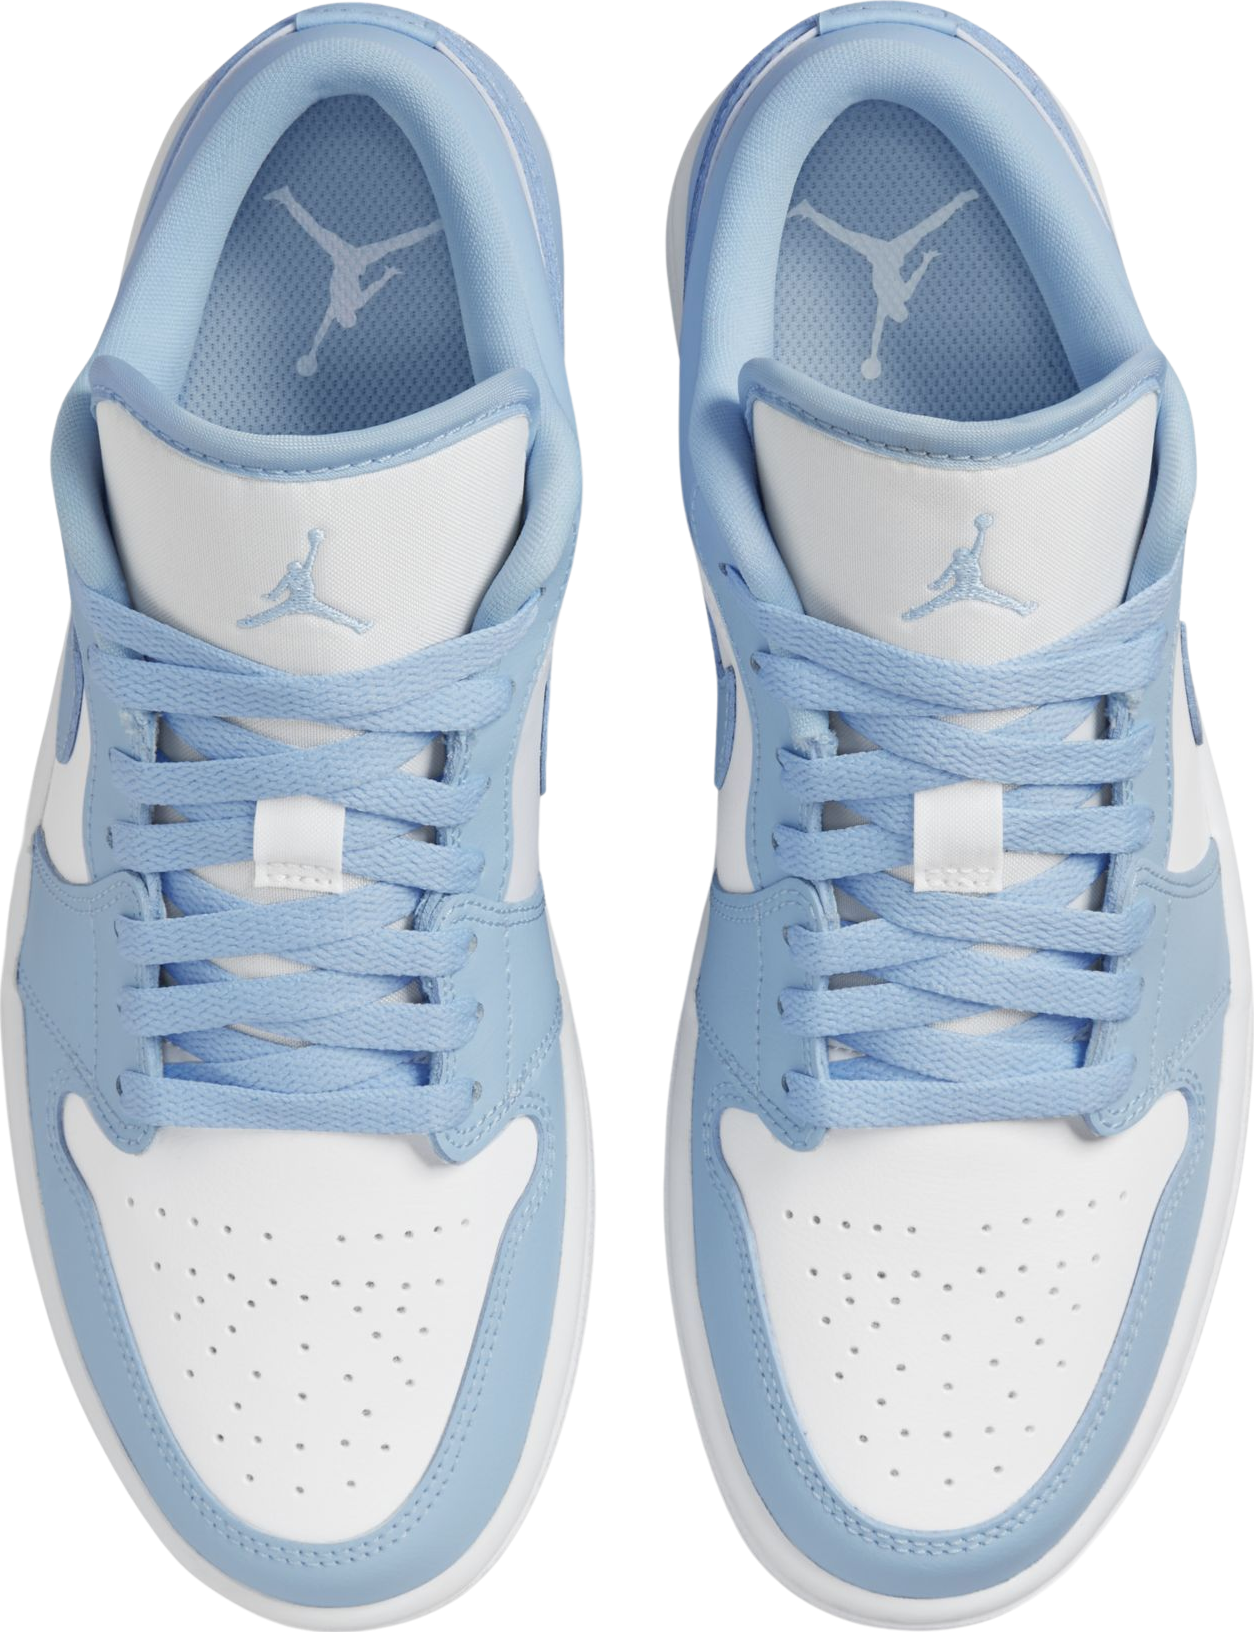 Air Jordan 1 Low Ice Blue (W)